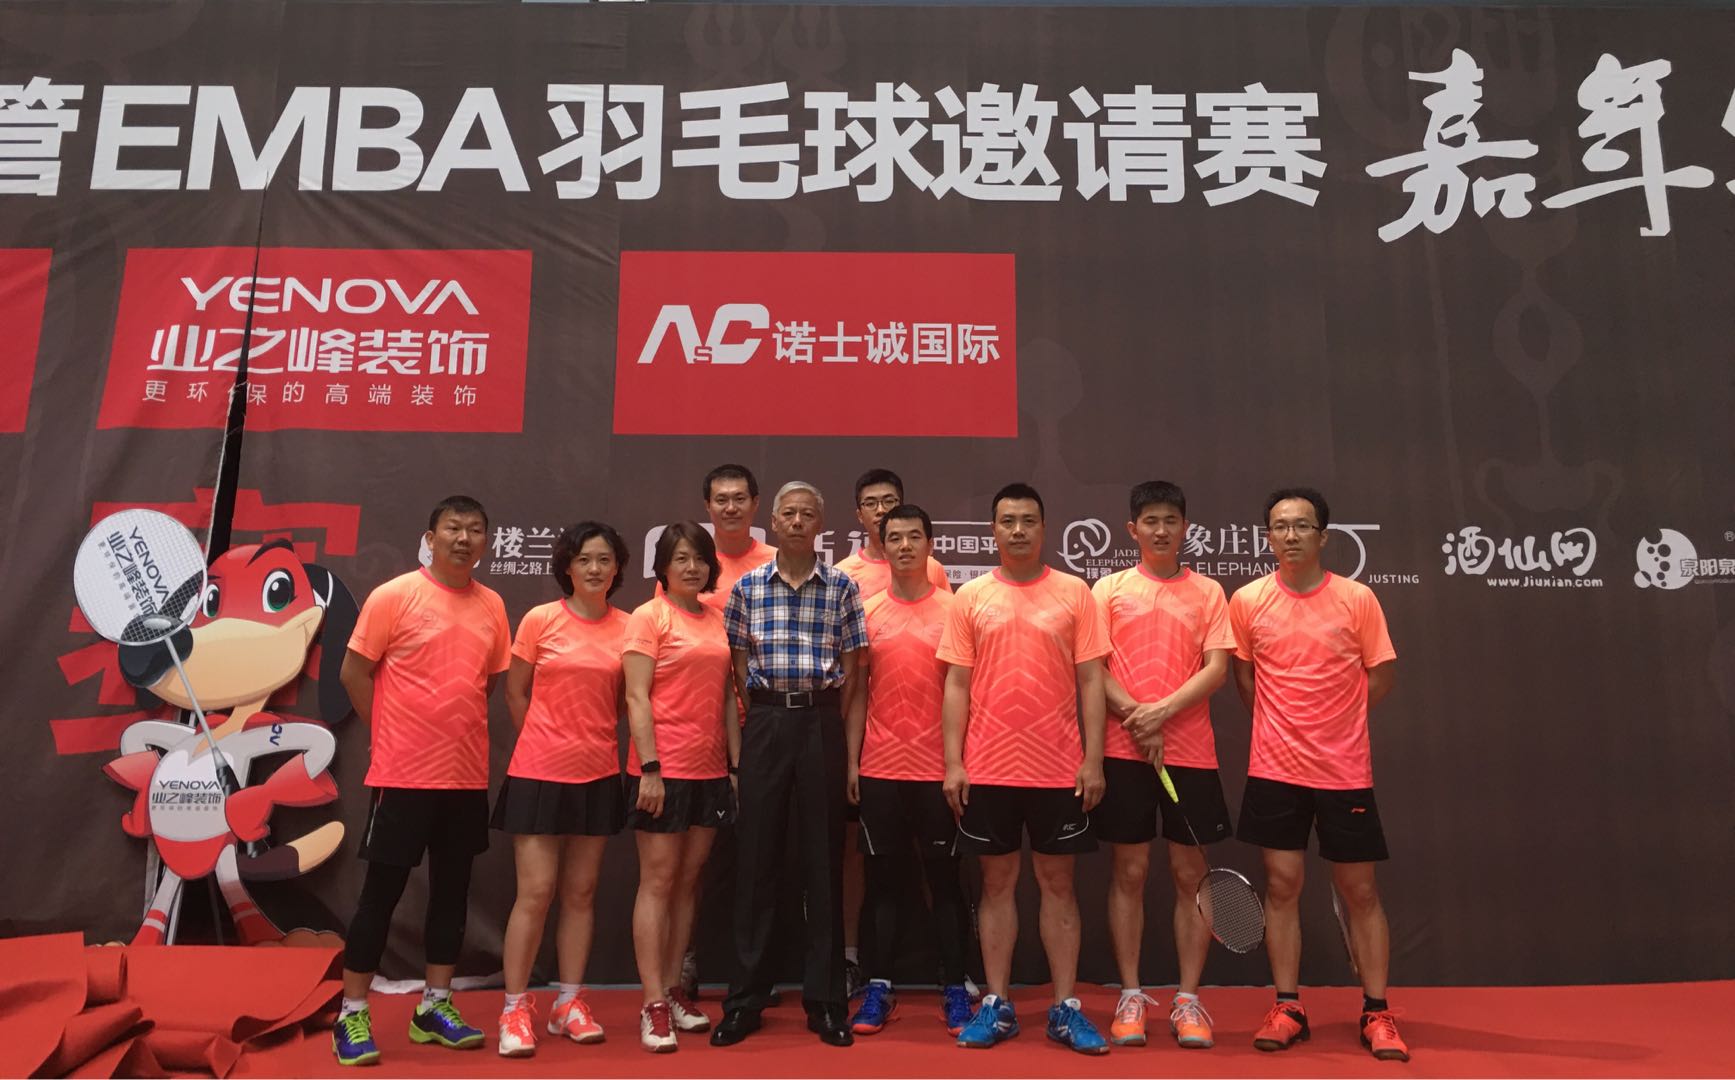 中科院代表队喜获首届清华经管EMBA羽毛球邀请赛（嘉宾组）冠军